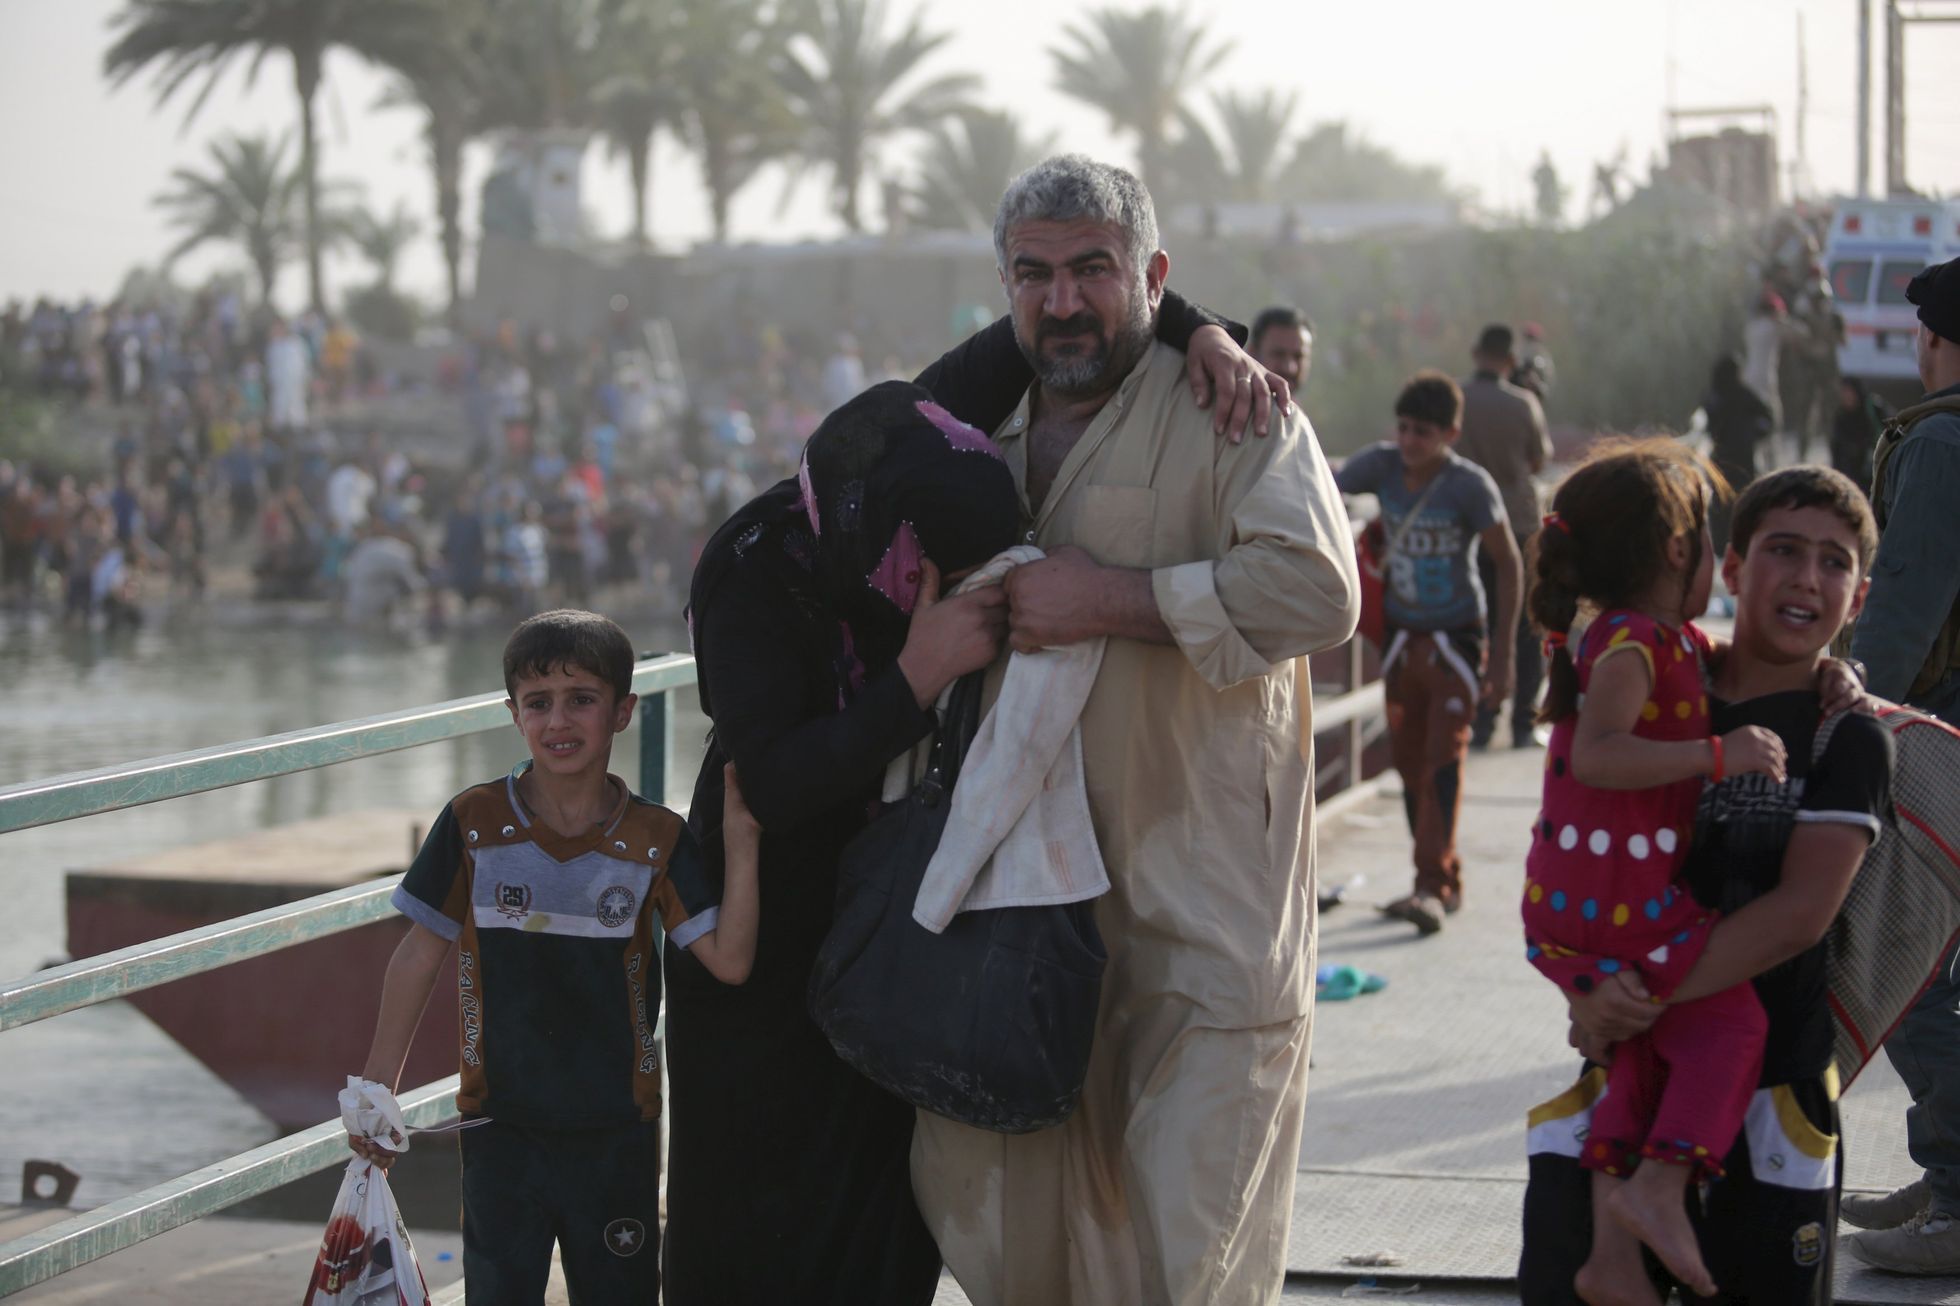 Obyvatelé prchající před IS z iráckého Ramadi